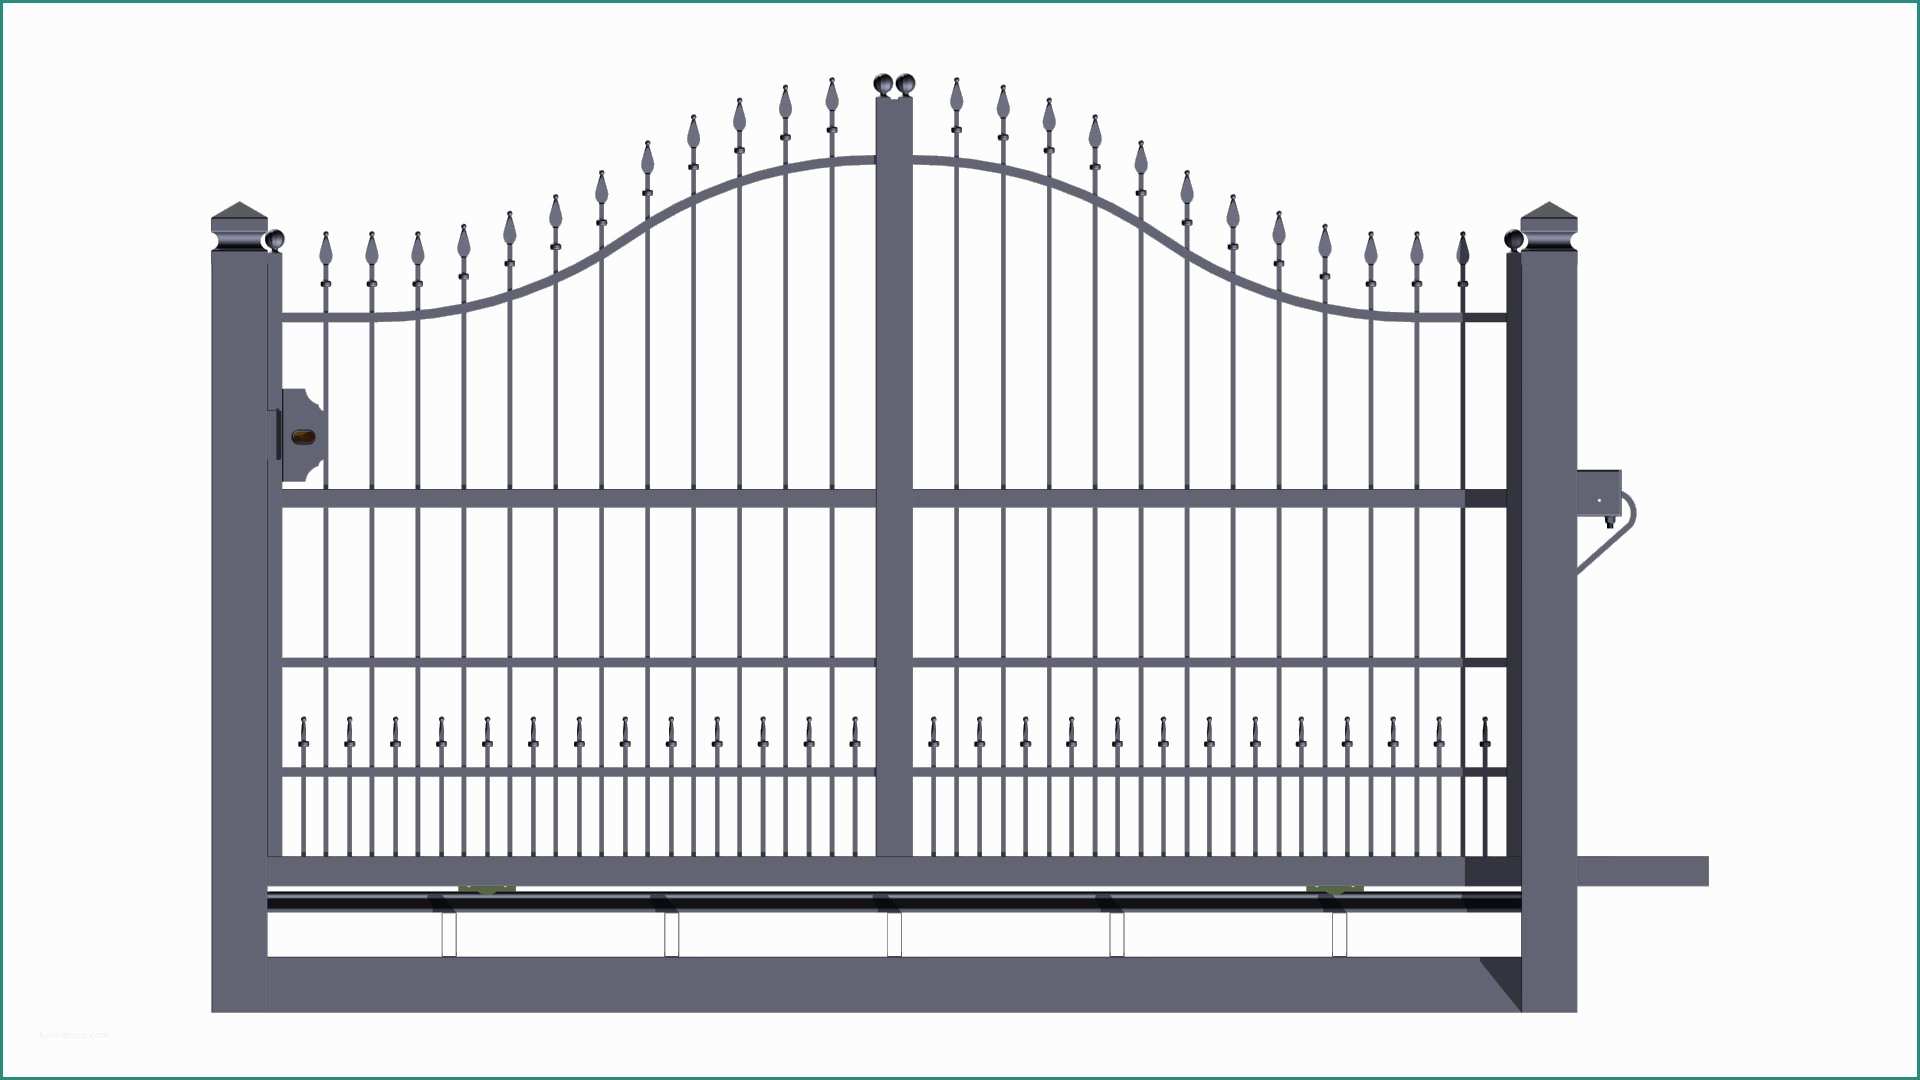 Pannelli in lamiera per recinzioni prezzi e reti for Pannelli recinzione leroy merlin